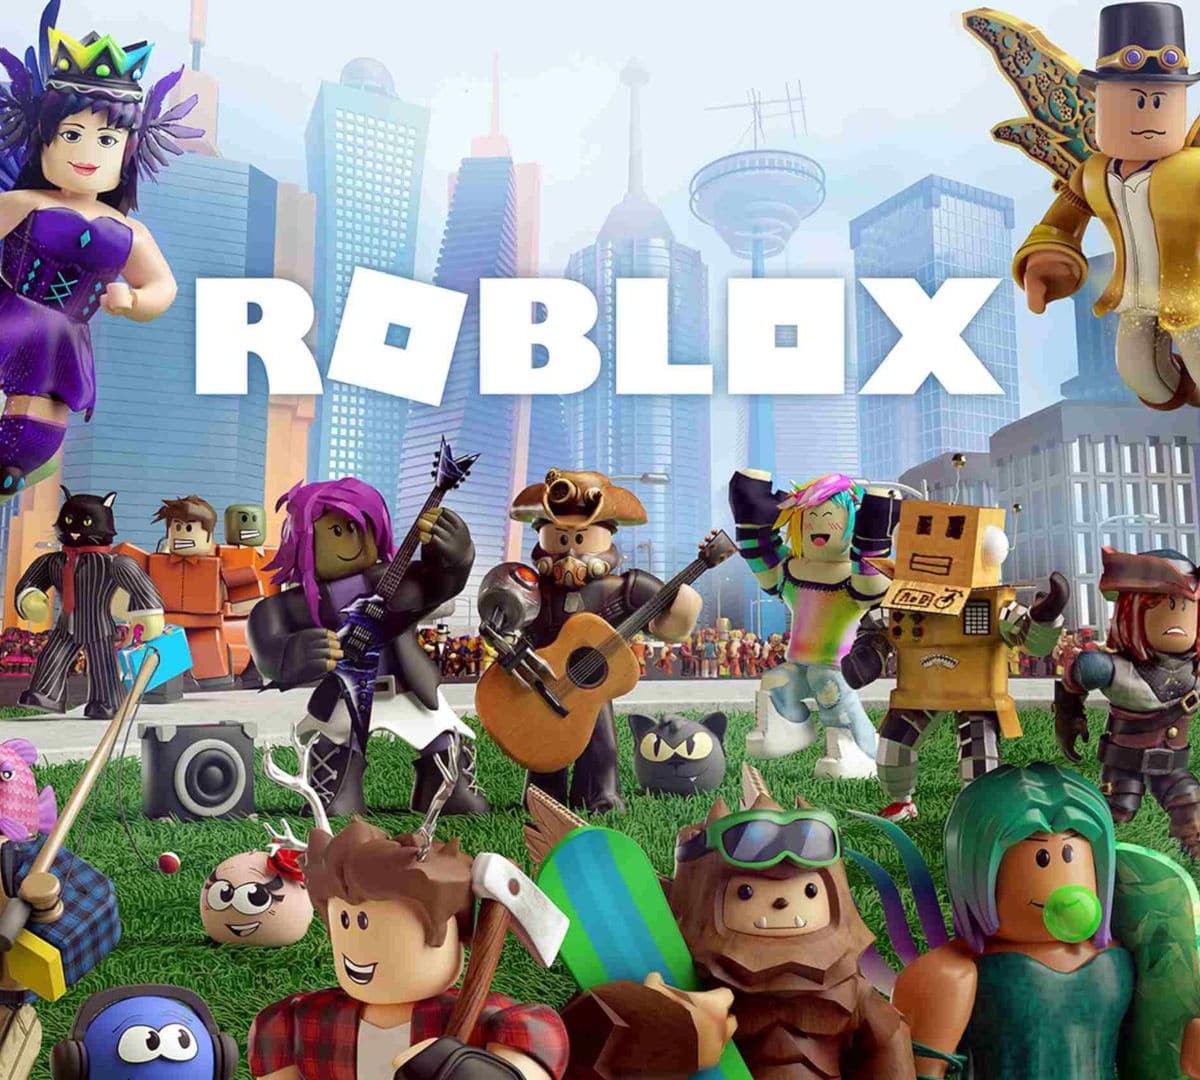 Roblox anuncia versão para PS4 e PS5, novo chatbot IA e mais novidades 